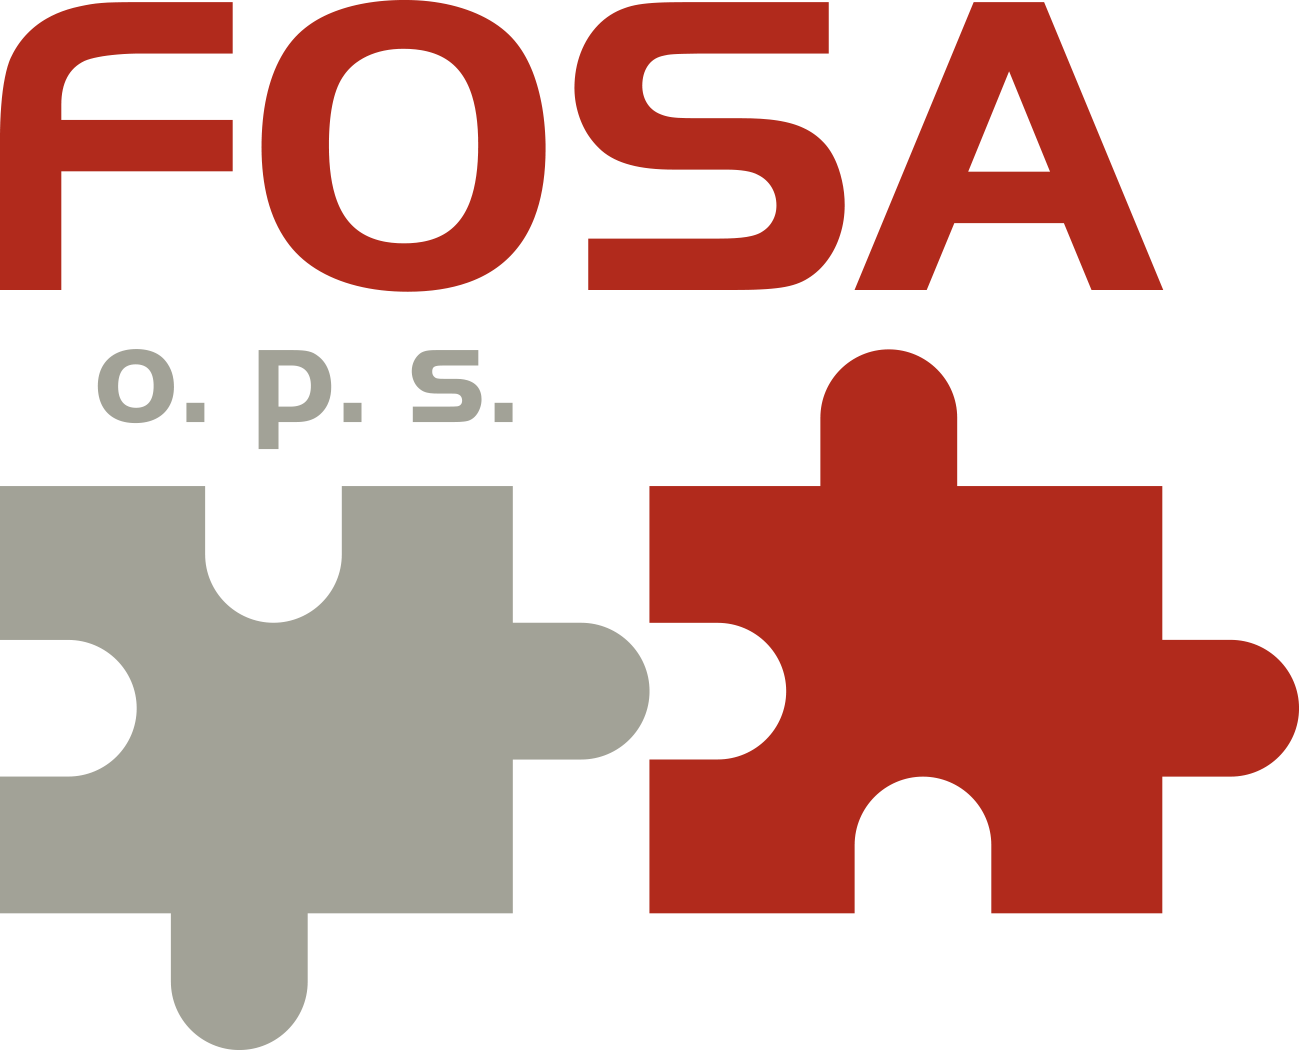 Fosaops - Slogan Vaší společnosti